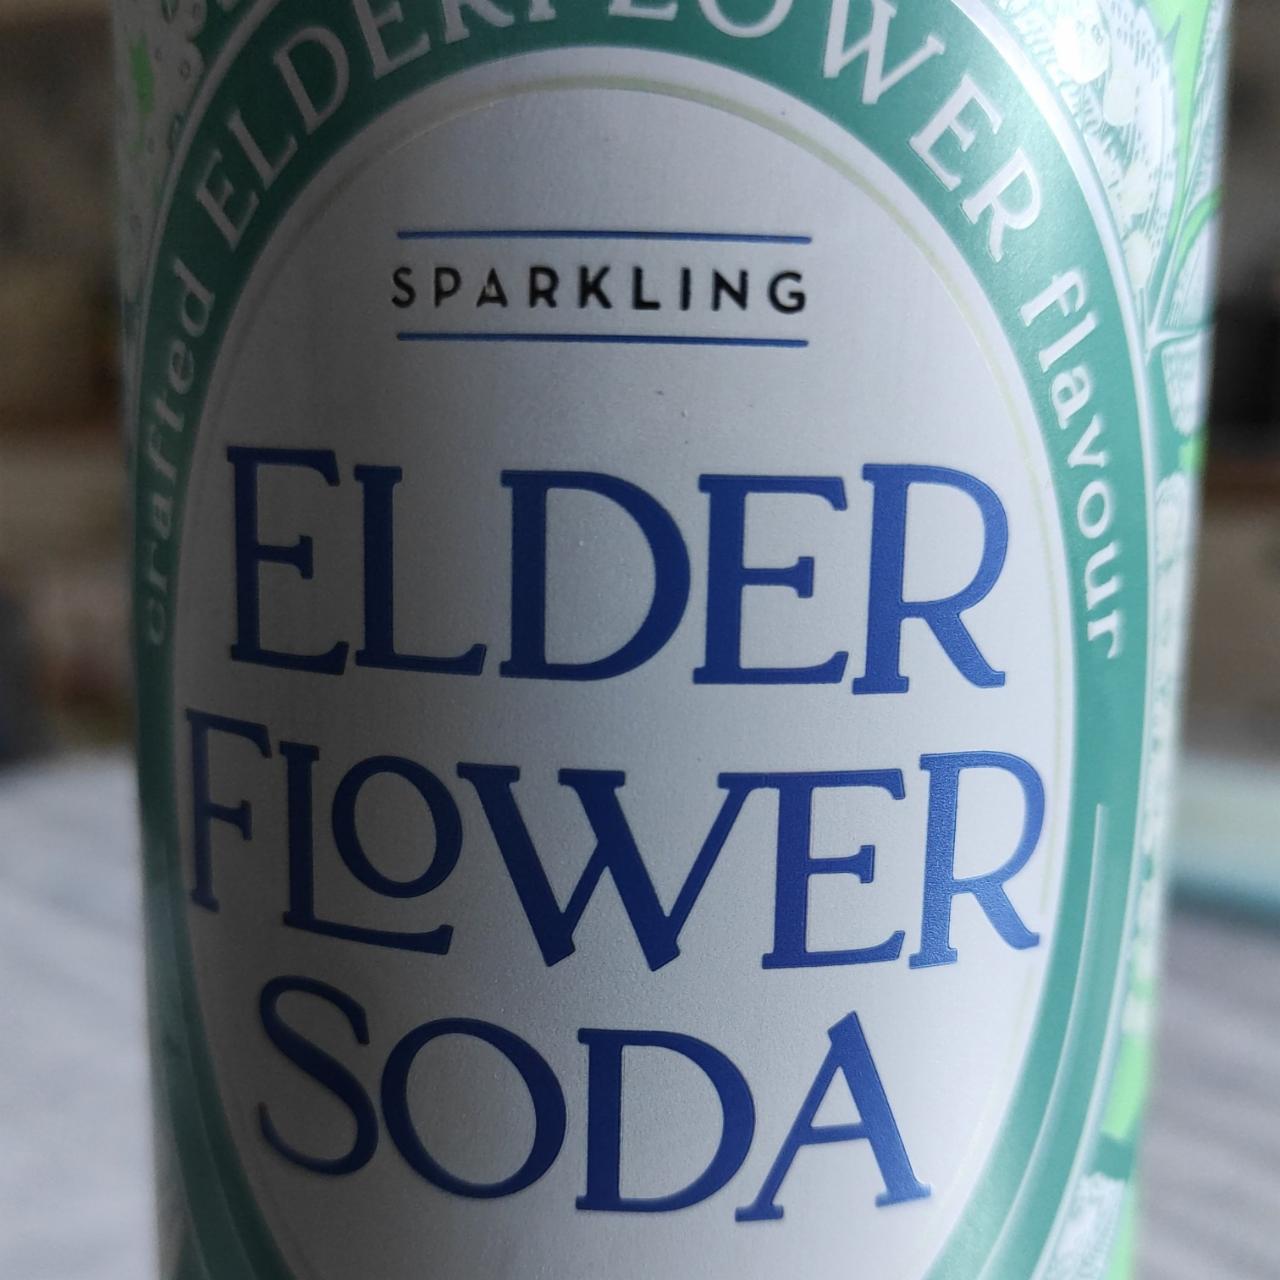 Fotografie - Elder flower soda Tailor